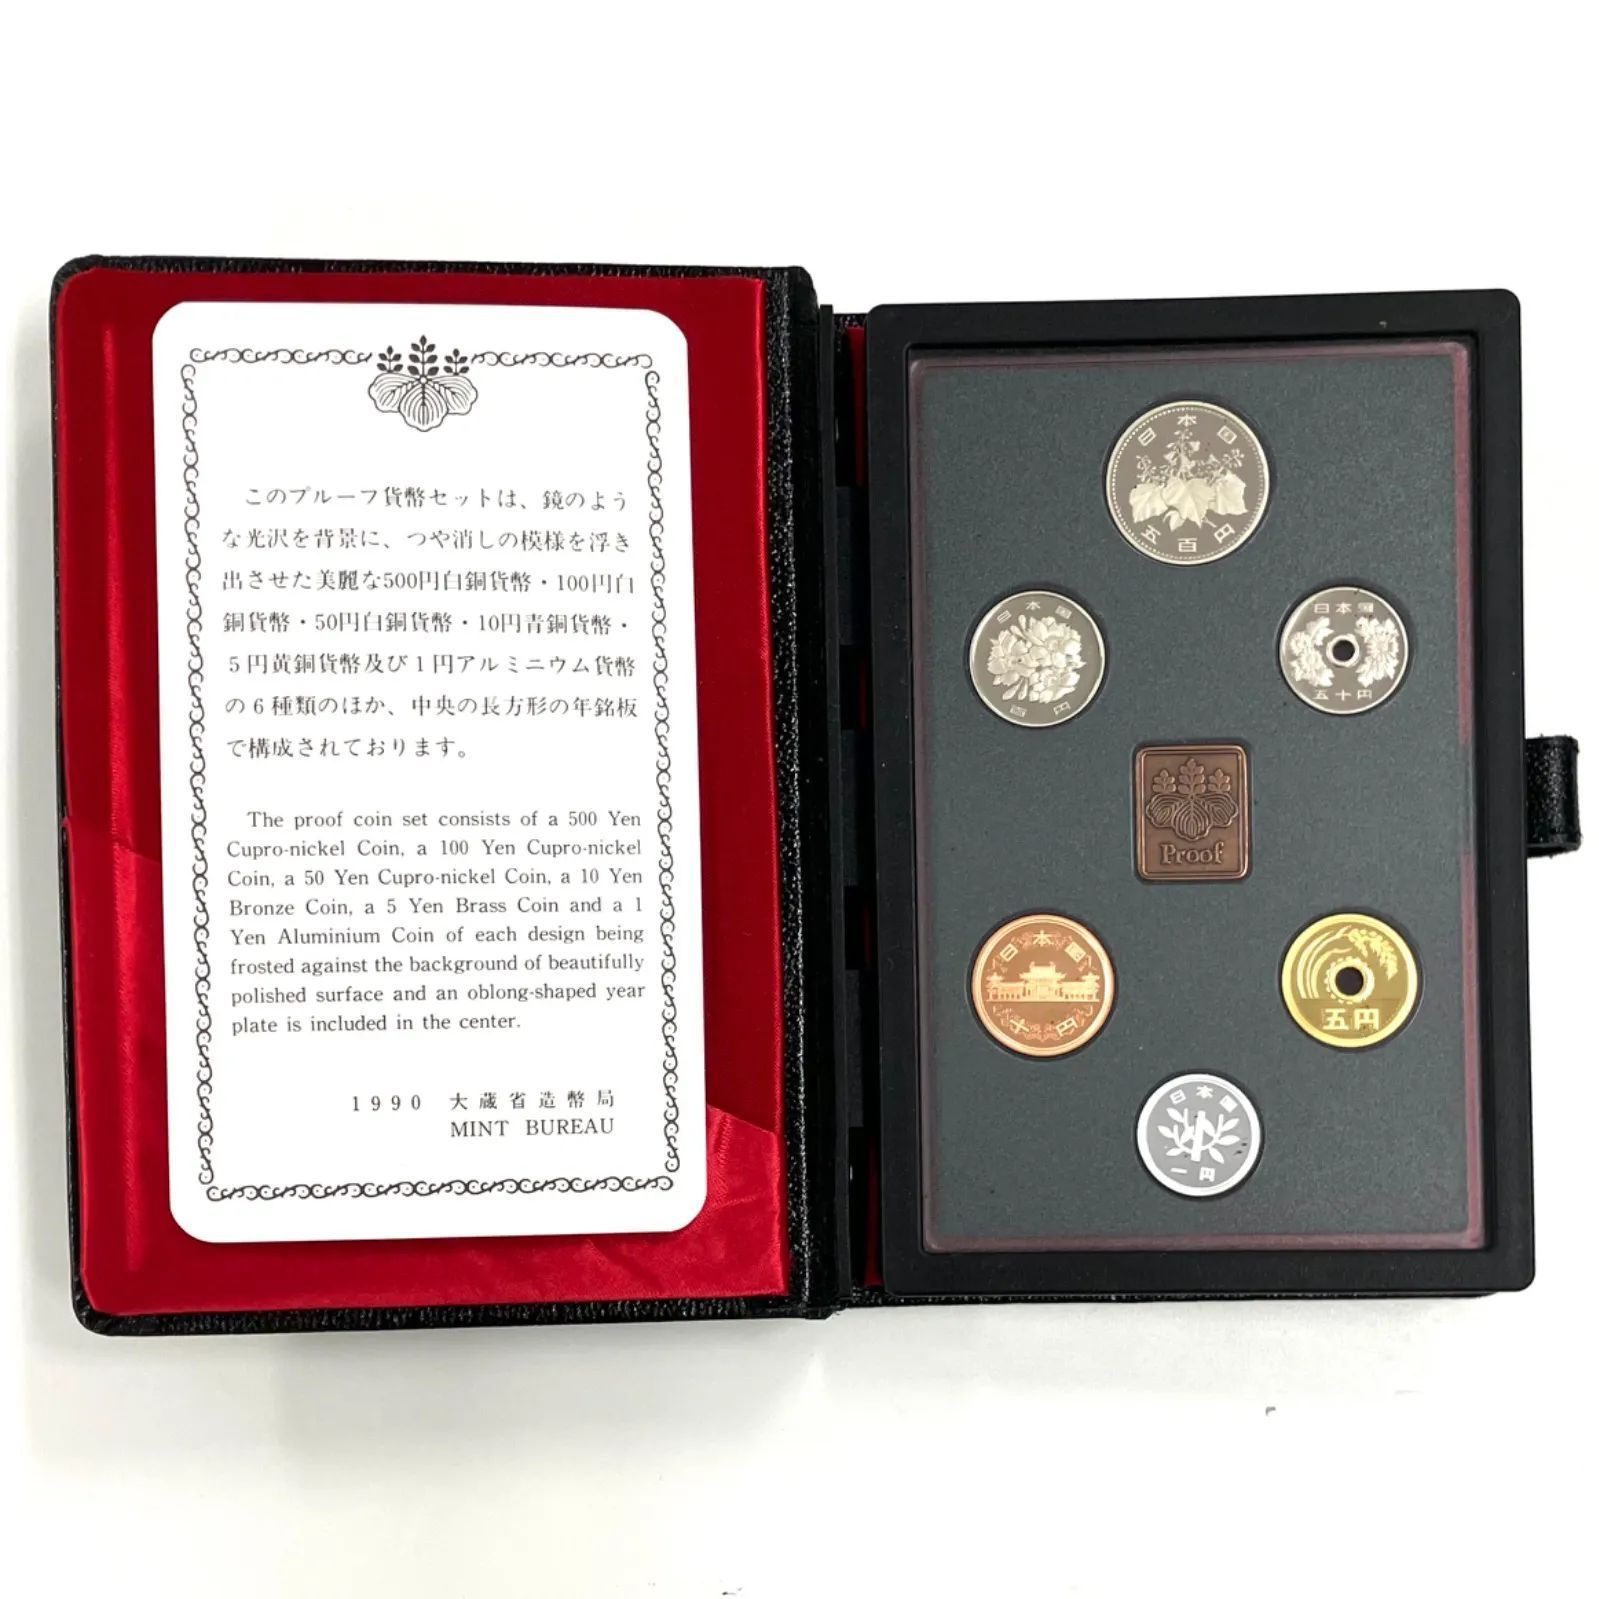 大蔵省 造幣局プルーフ貨幣セット 1990 - コレクション